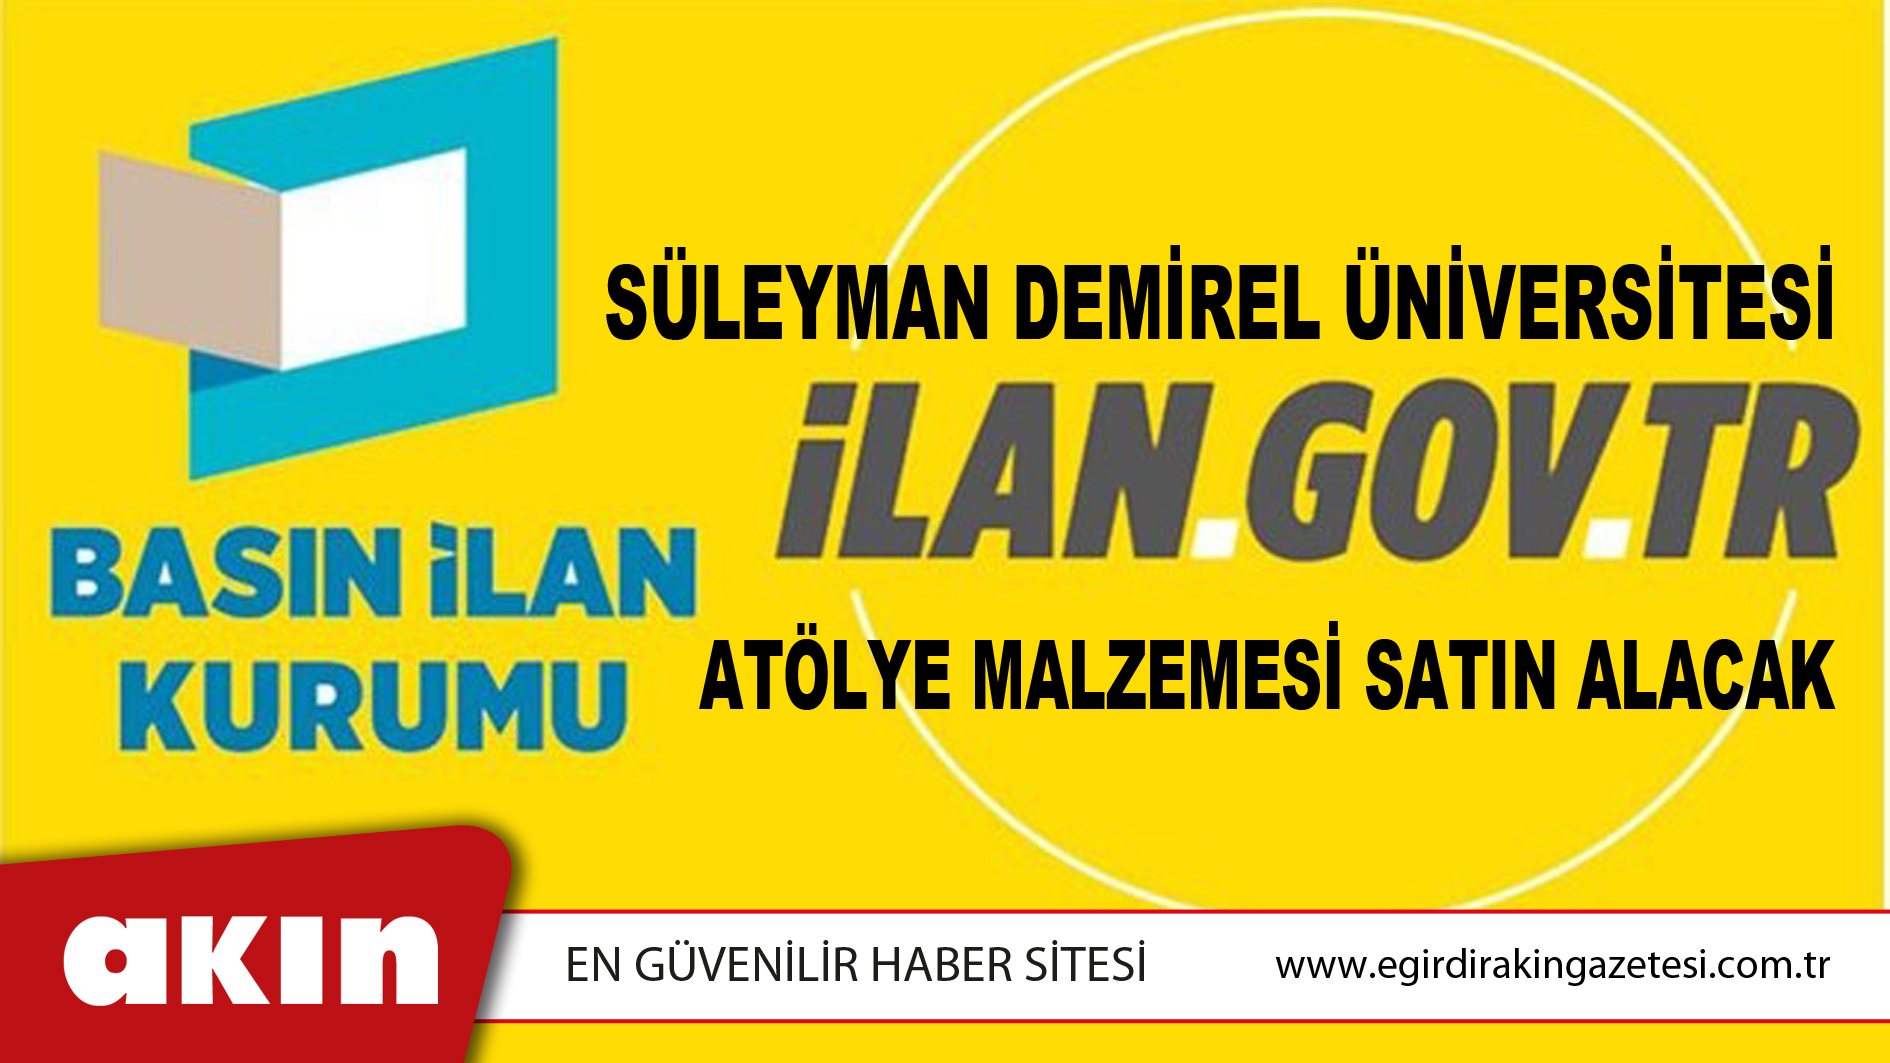 Süleyman Demirel Üniversitesi Atölye Malzemesi Satın Alacak